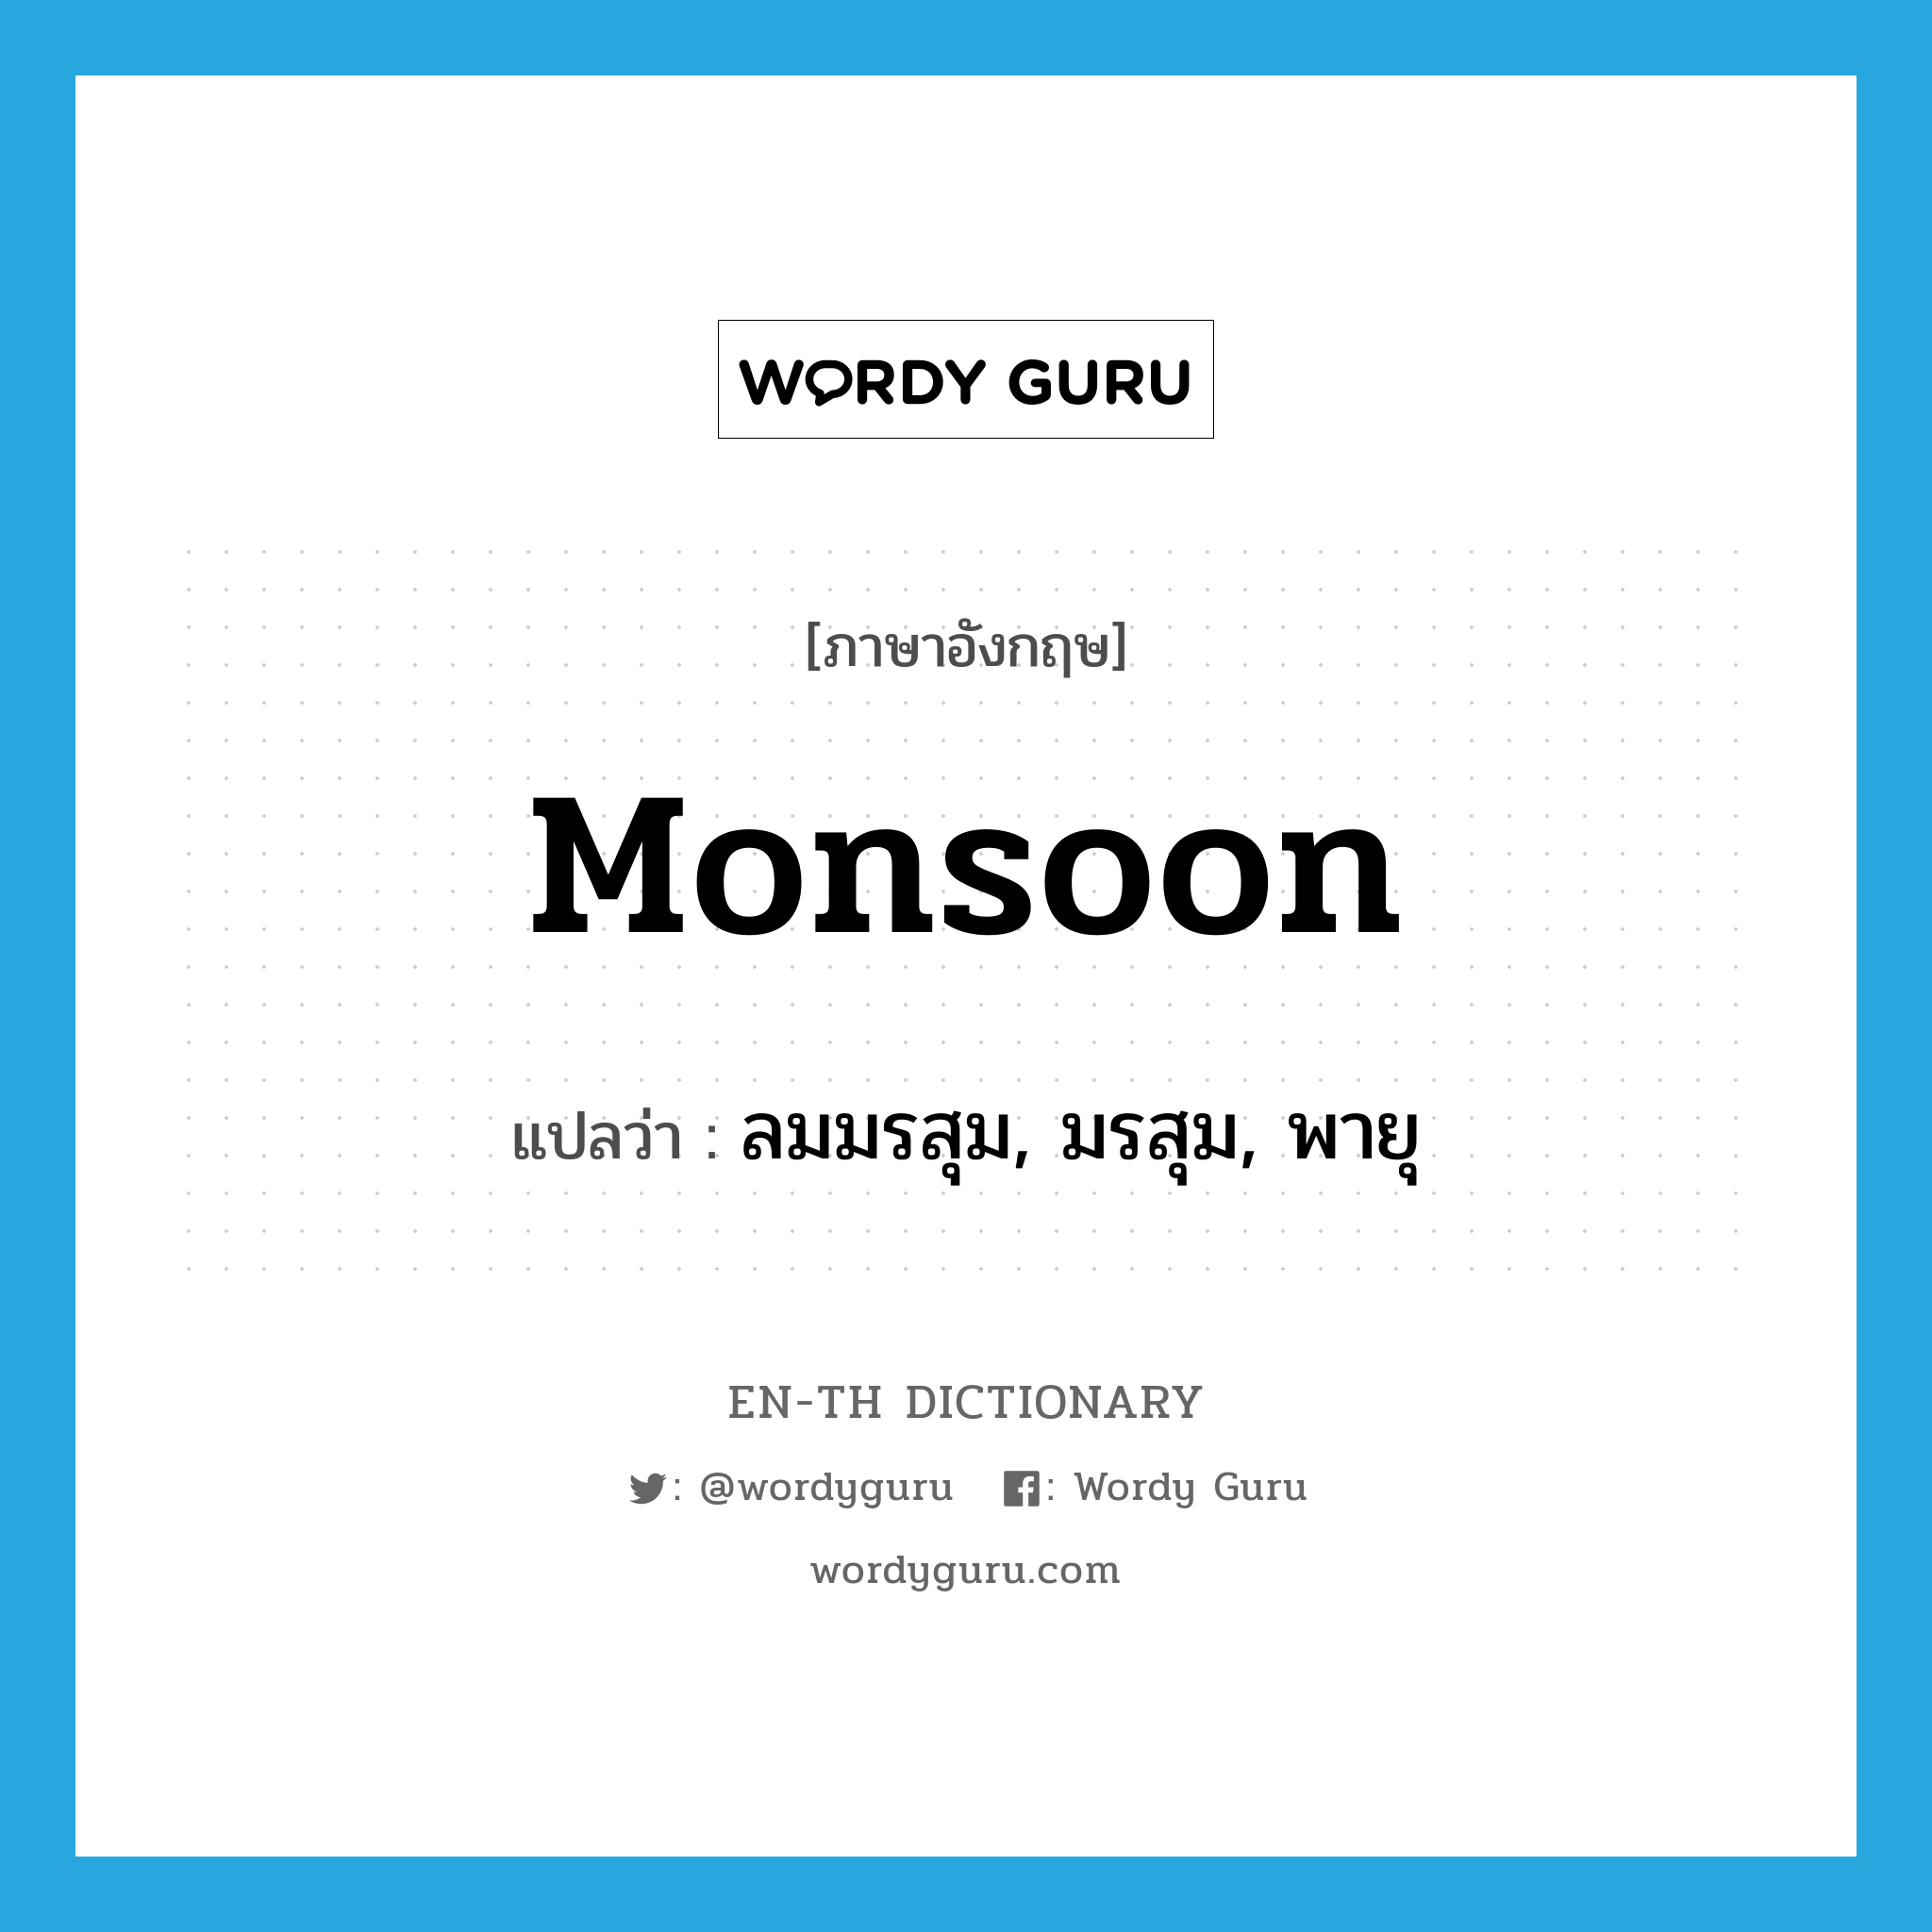 monsoon แปลว่า?, คำศัพท์ภาษาอังกฤษ monsoon แปลว่า ลมมรสุม, มรสุม, พายุ ประเภท N หมวด N